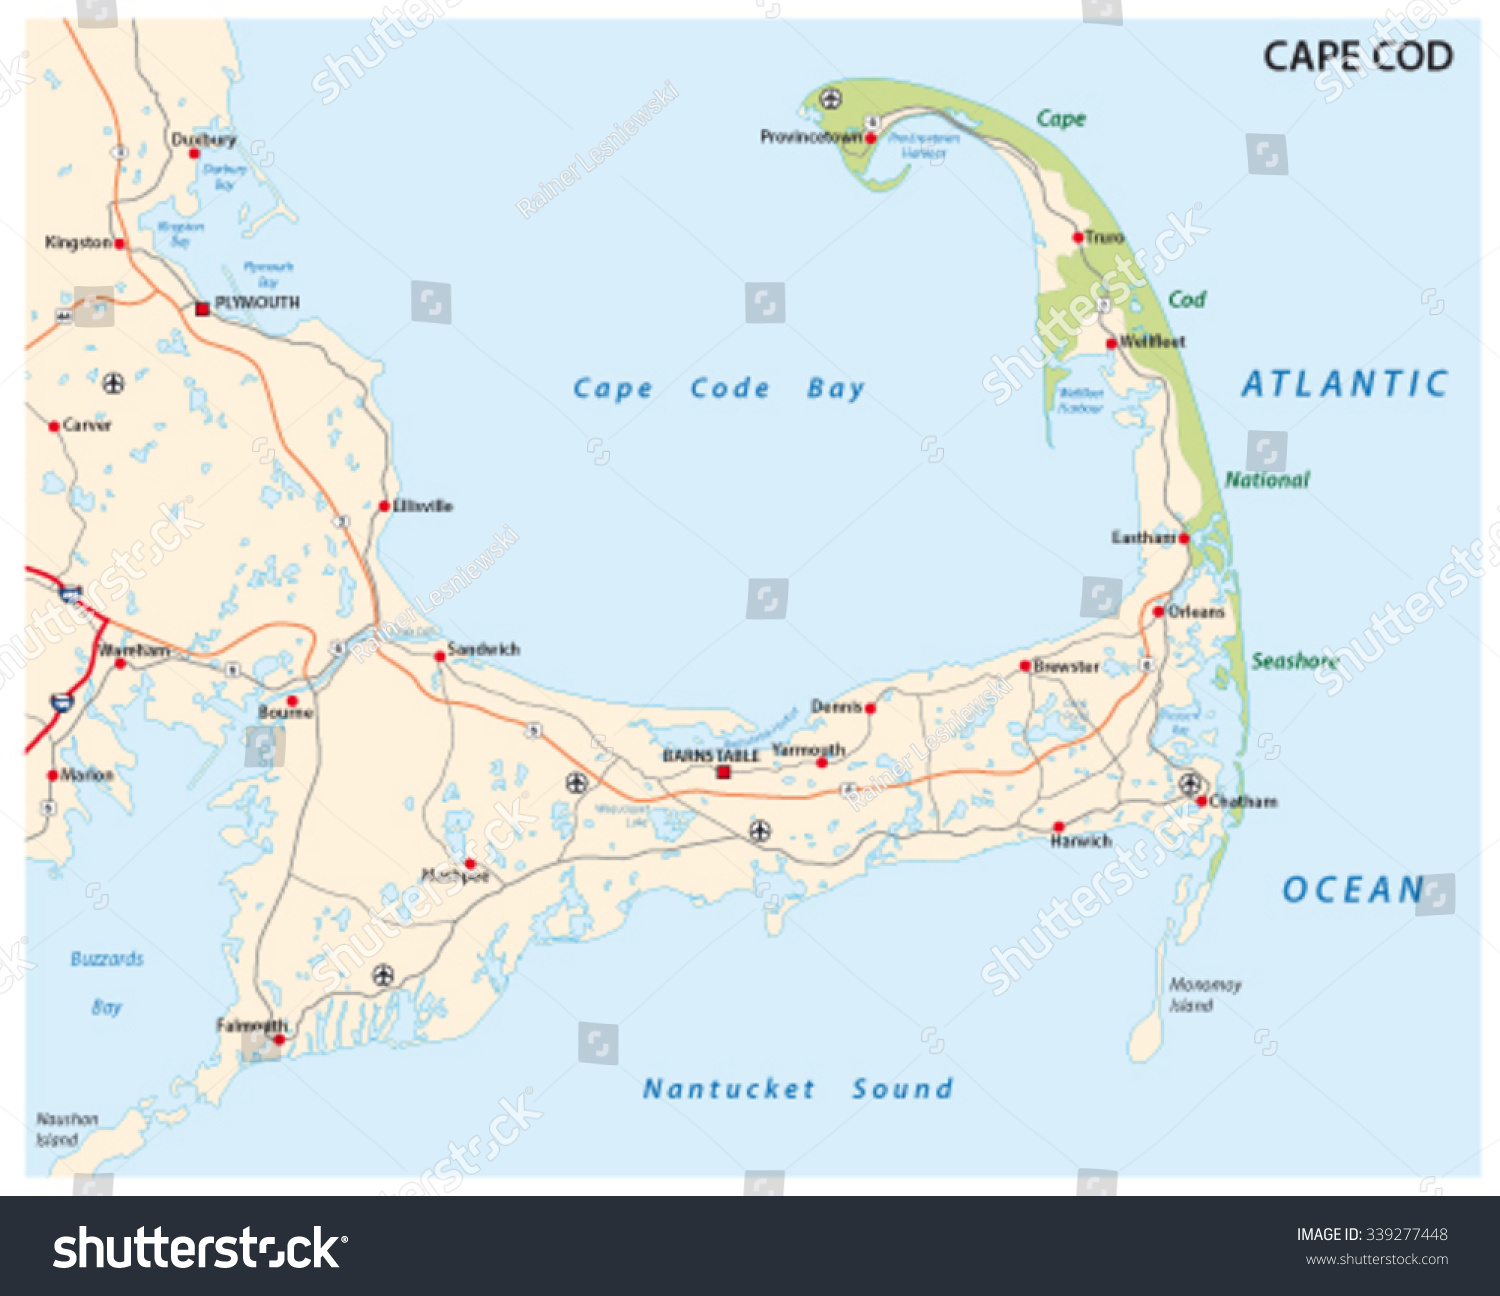 Cape Cod Road Map vector de stock (libre de regalías) 339277448